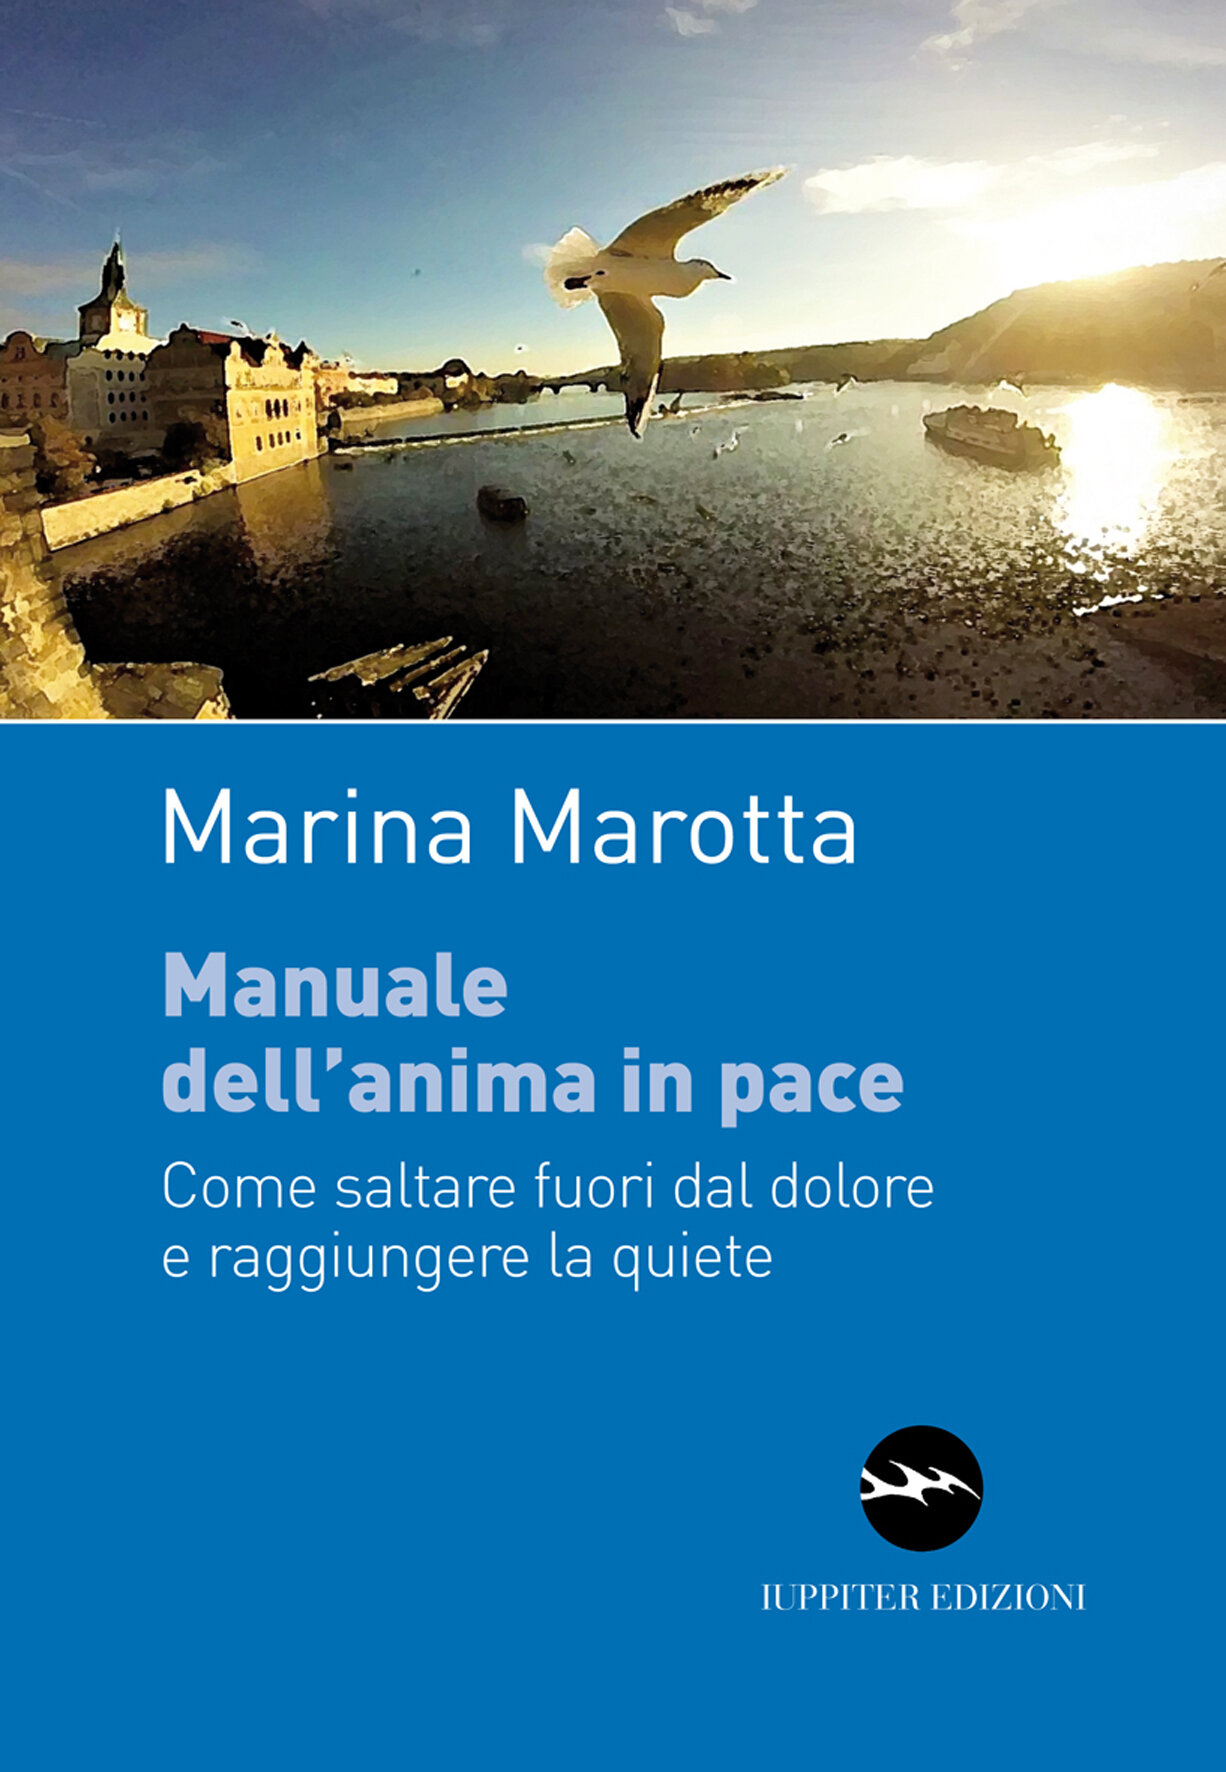 ‘Manuale dell’anima in pace’ di Marina Marotta. Venerdì 12 a Varcaturo